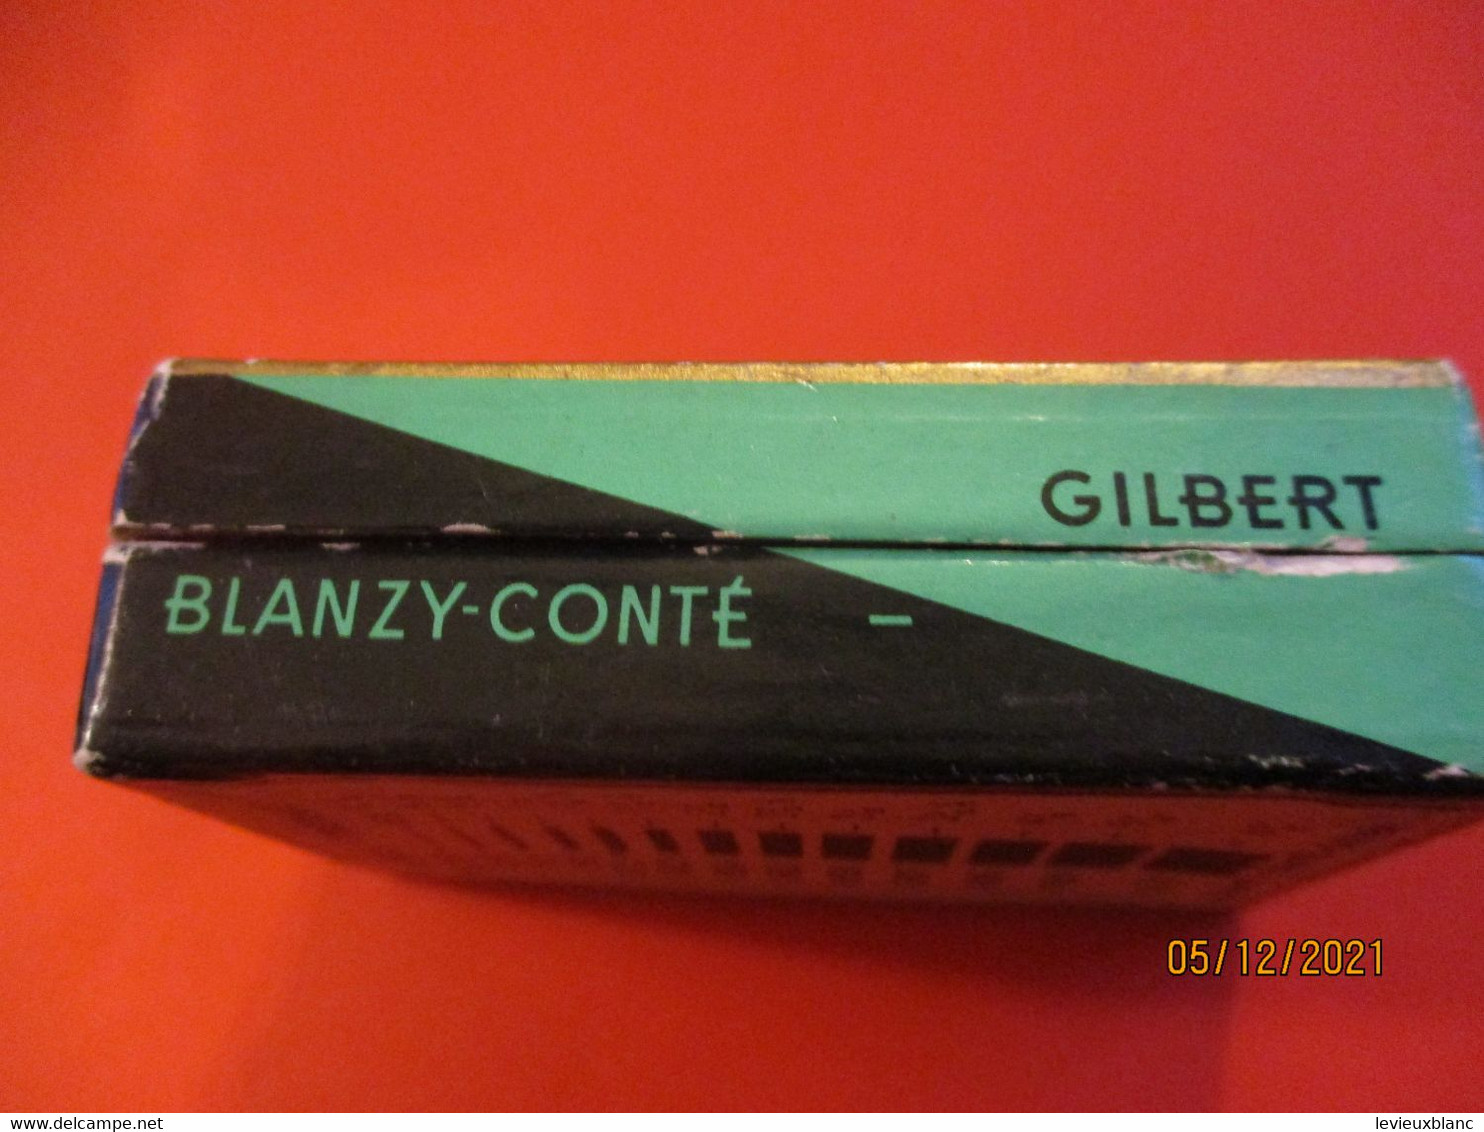 Boite de plumes métalliques pour écriture Normalisée/ BLANZY-CONTE-GILBERT/Tréraid-3-4m-m/Vers 1930-50  CAH327